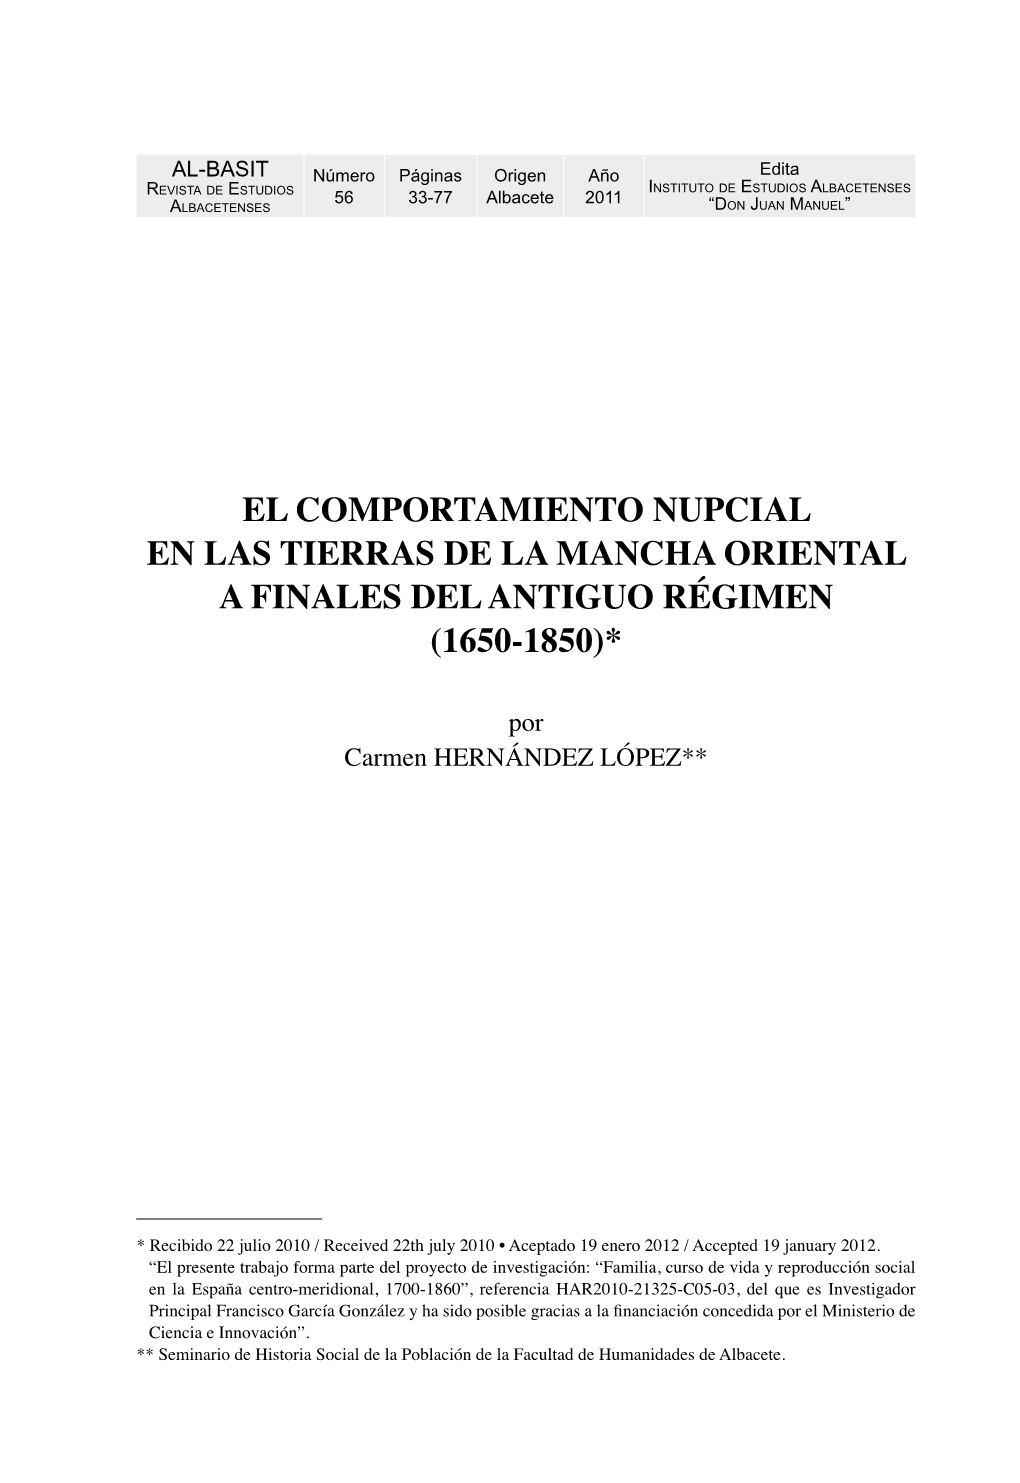 El Comportamiento Nupcial En Las Tierras De La Mancha Oriental a Finales Del Antiguo Régimen (1650-1850)*